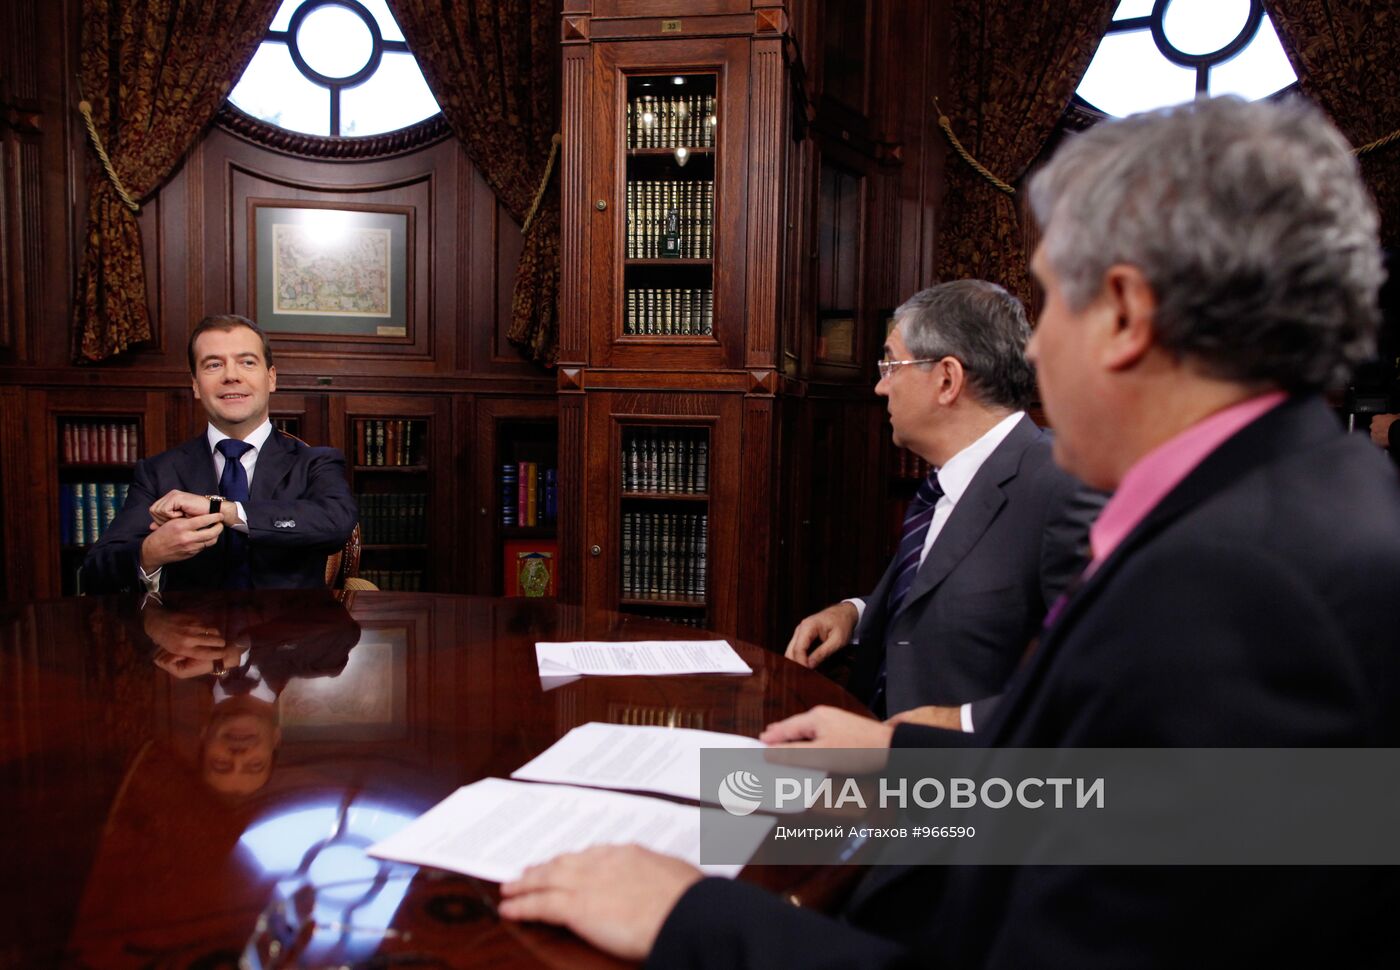 Интервью Д.Медведева главам трех федеральных каналов